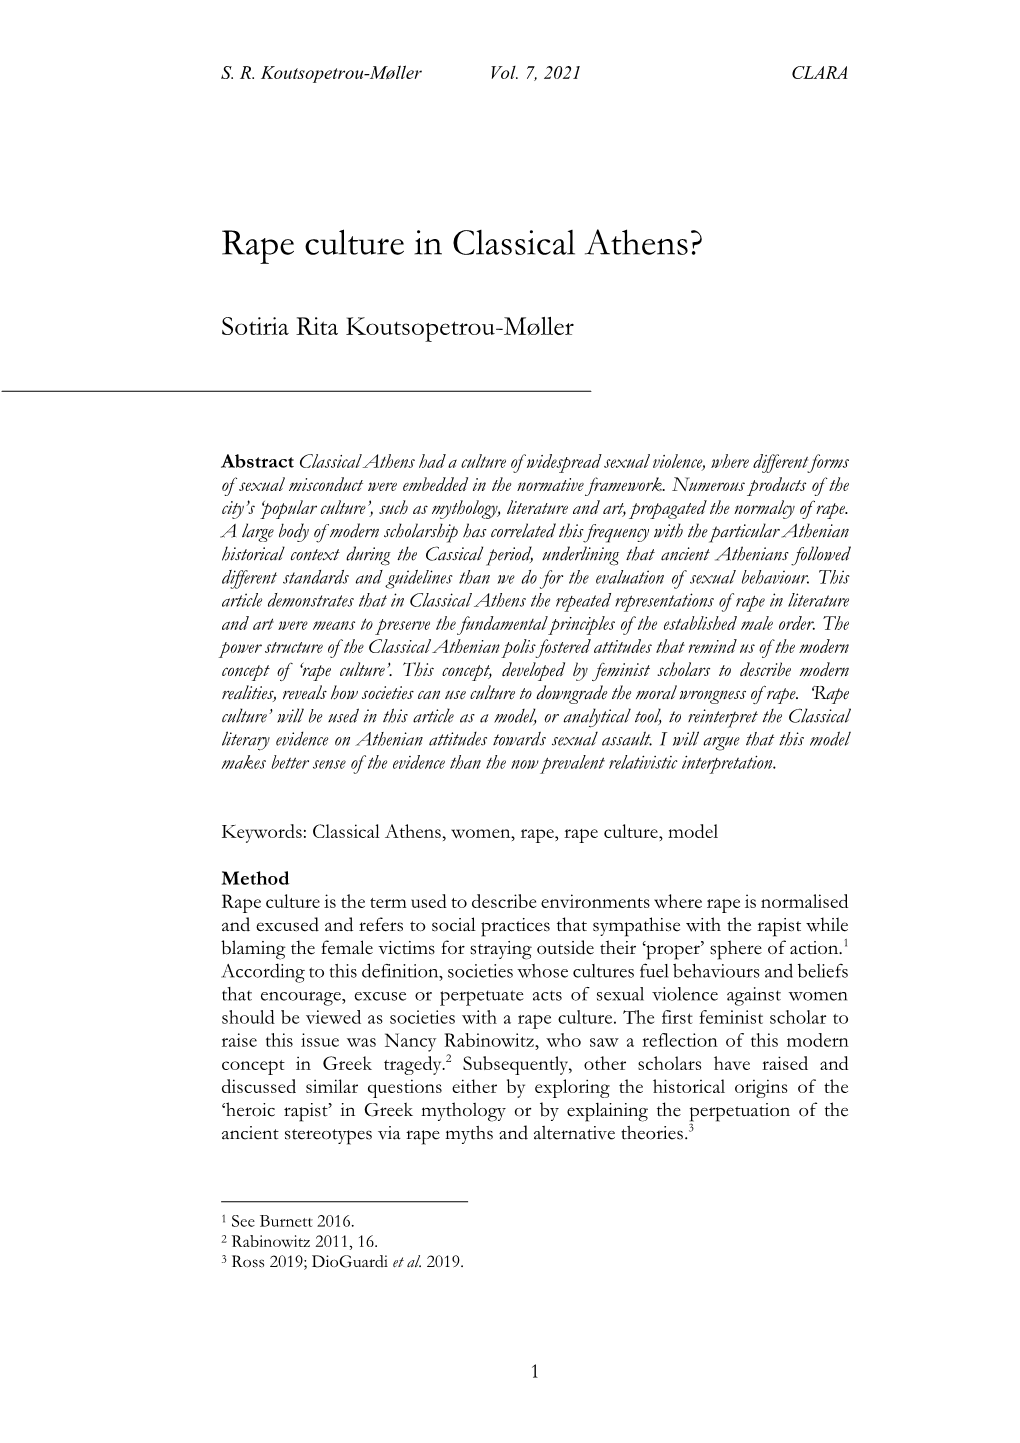 Rape Culture in Classical Athens?